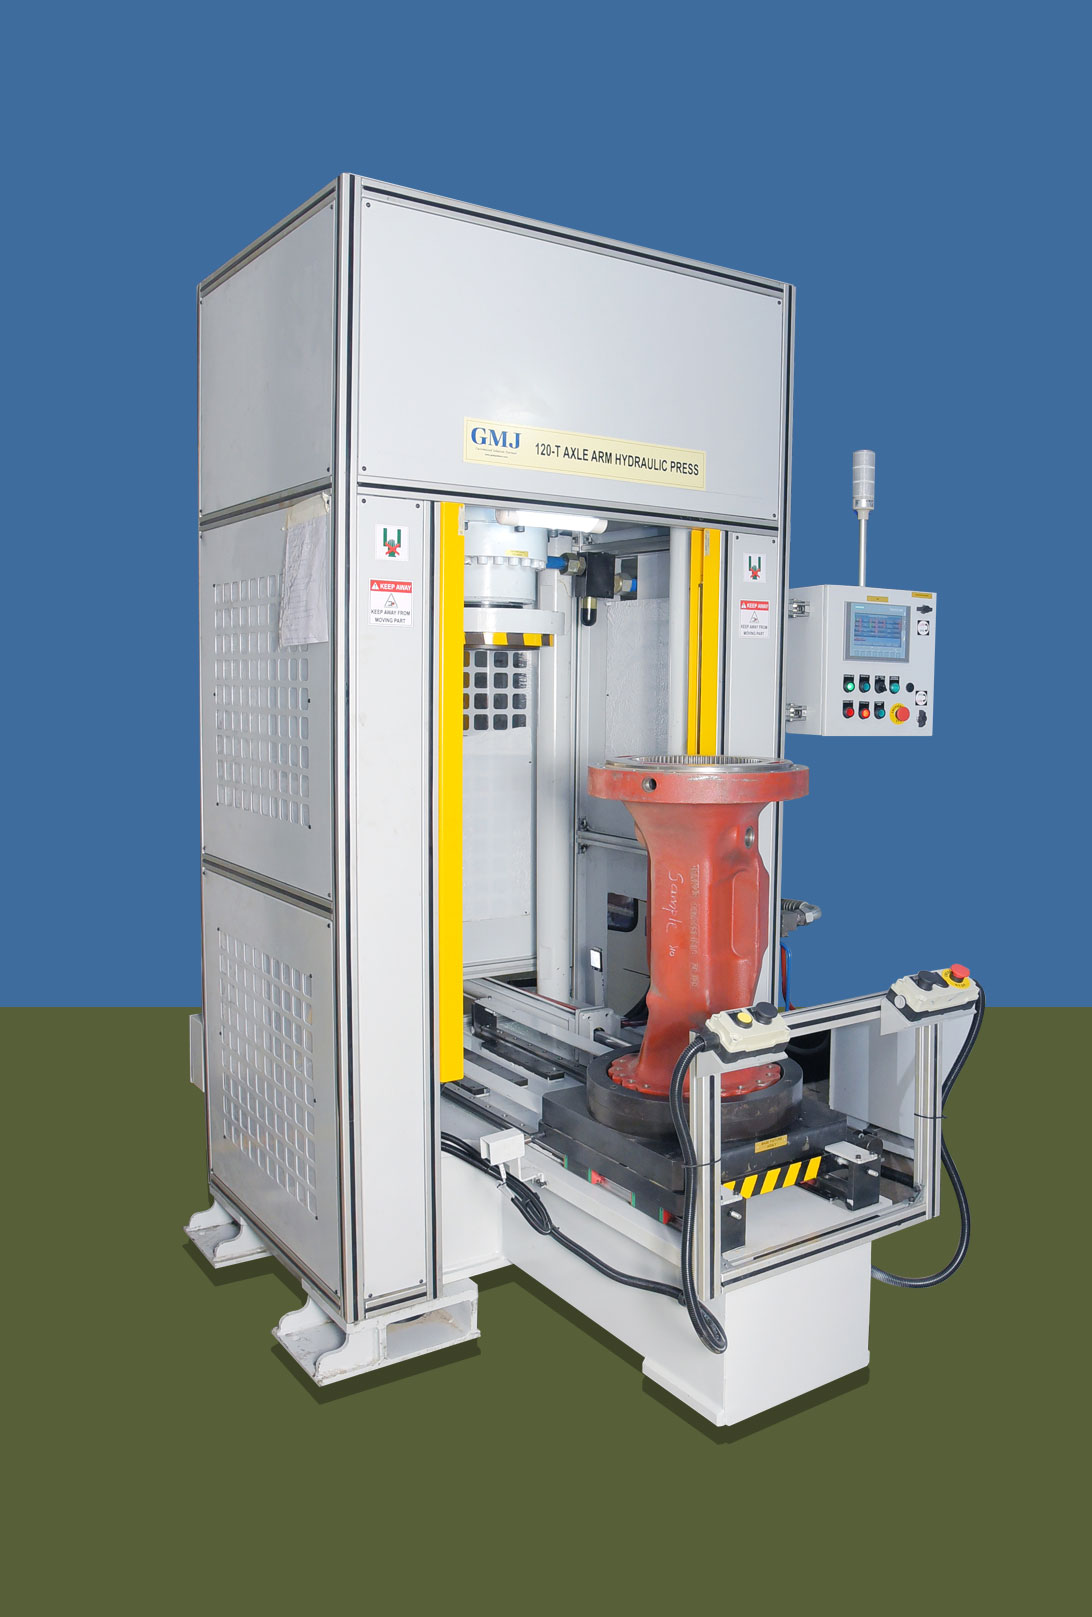 120-T Axel Arm Hydraulic Press